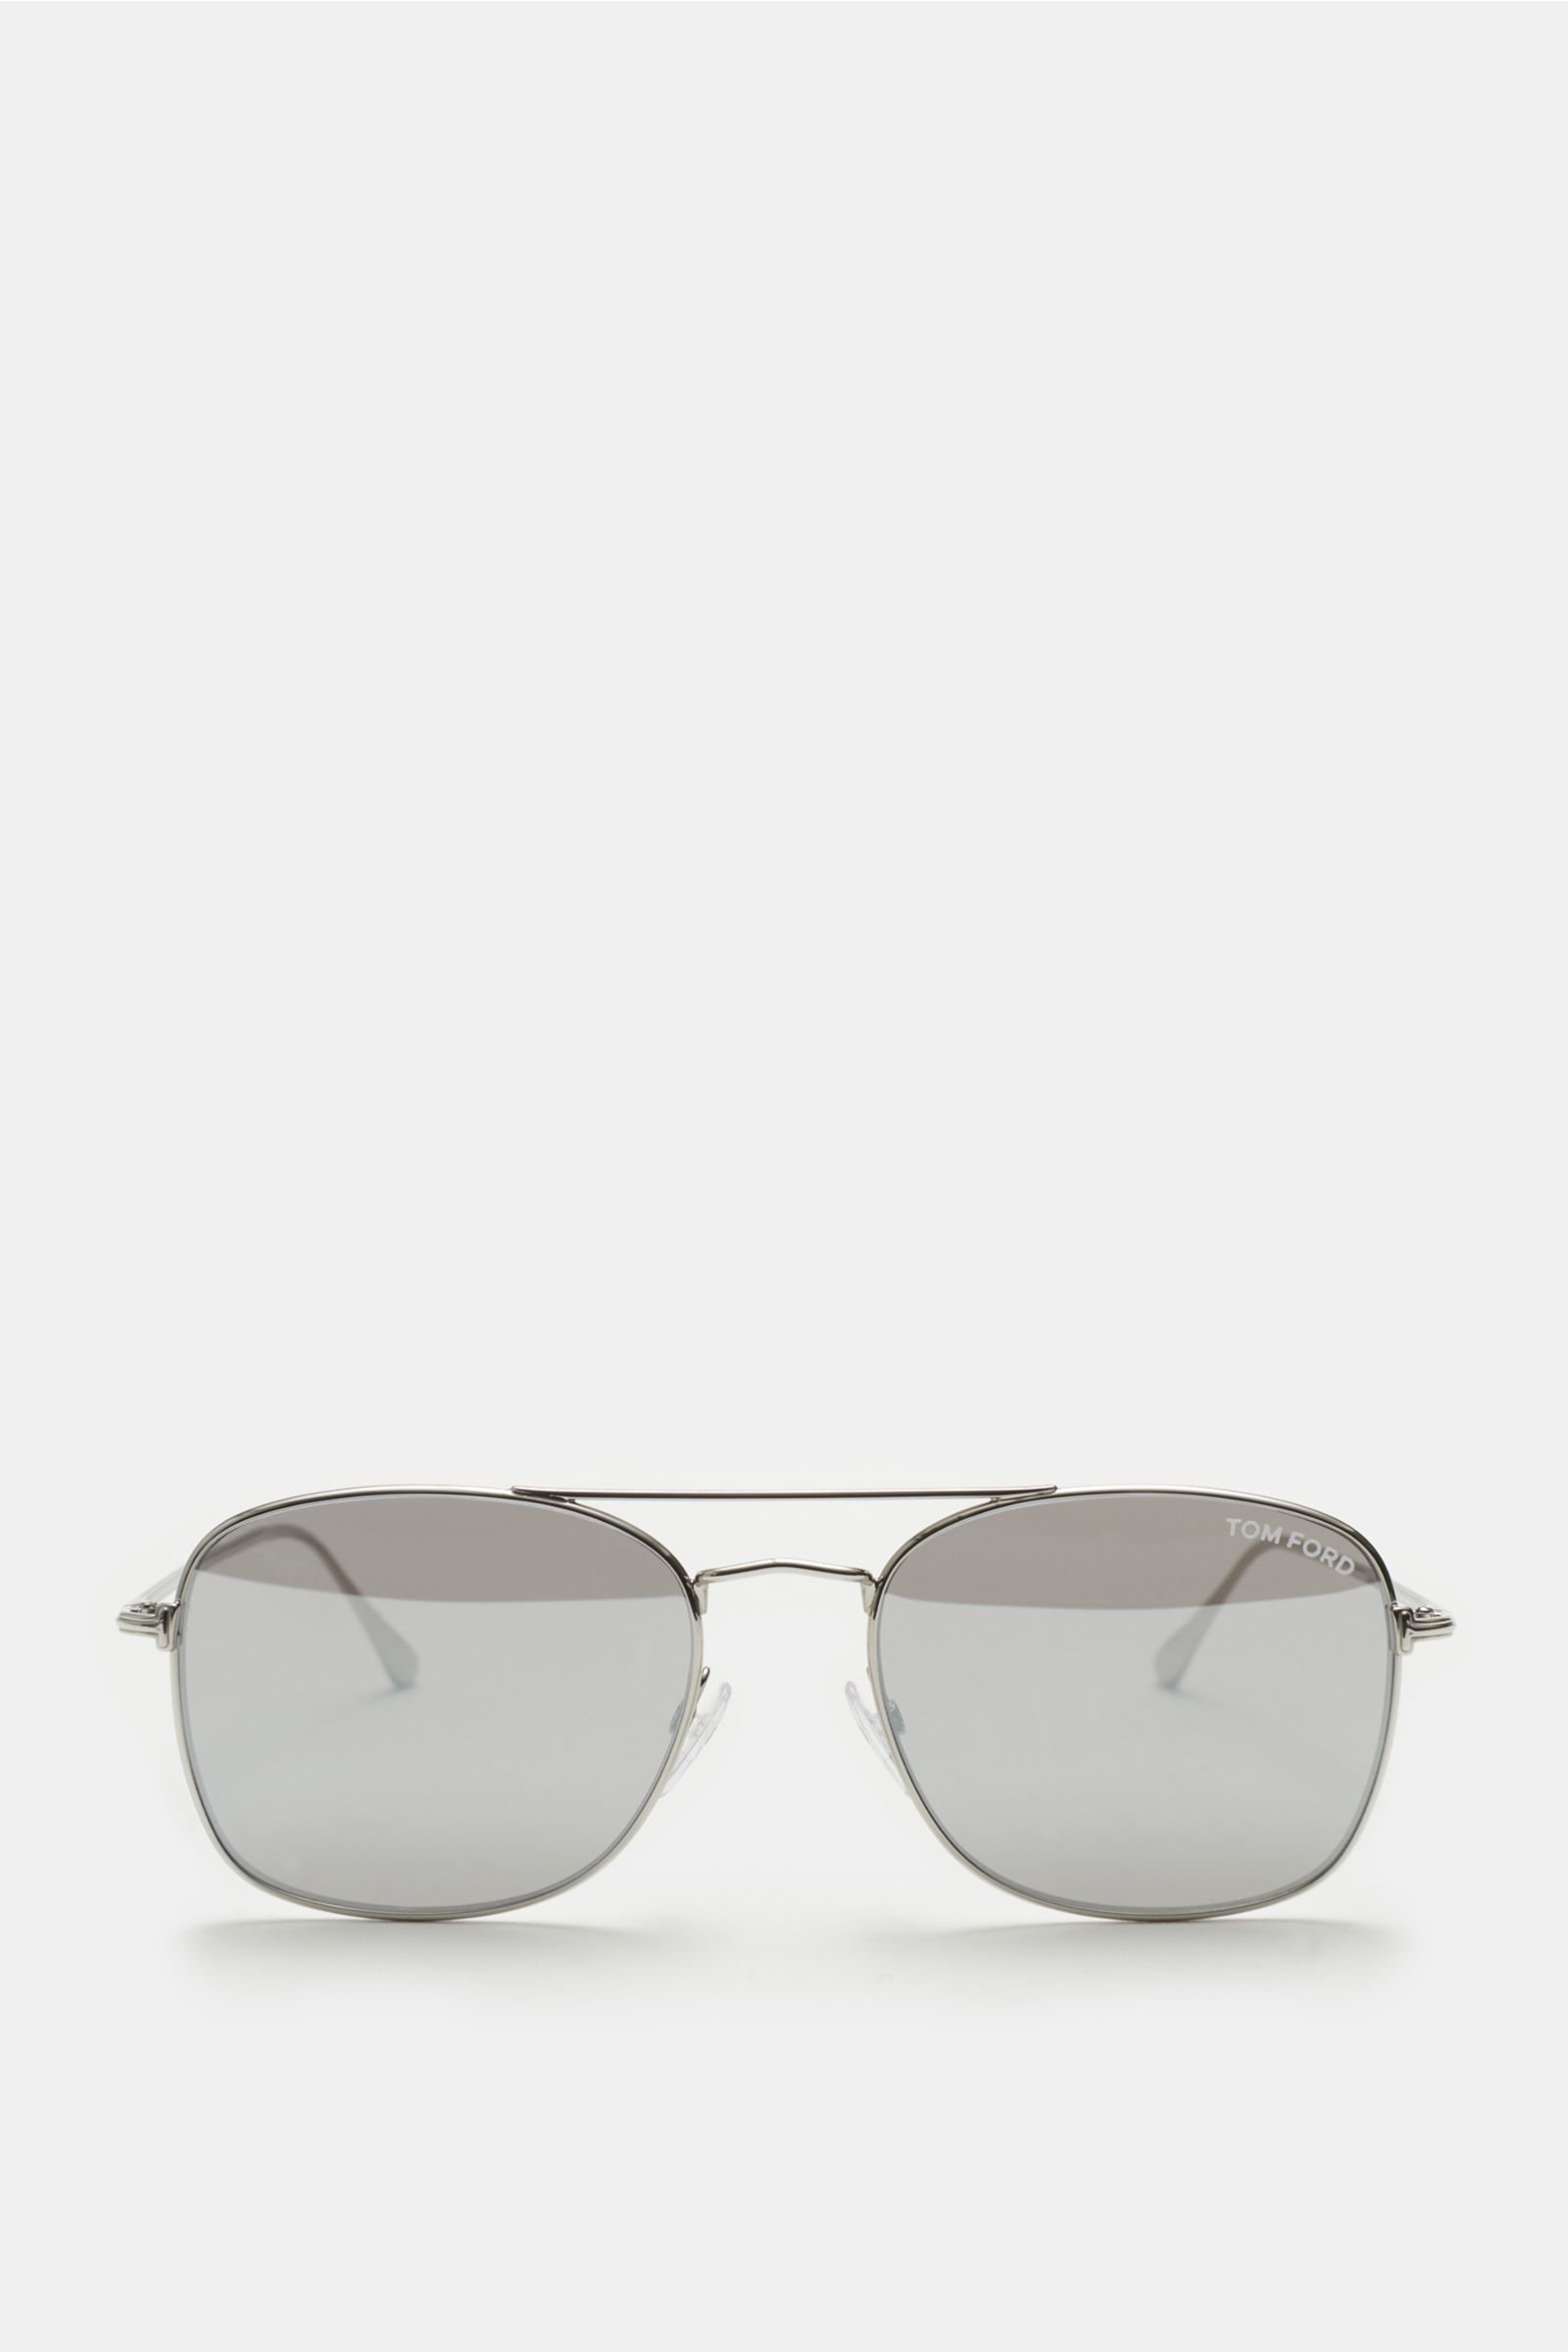 Sonnenbrille 'Luca' silber/grau